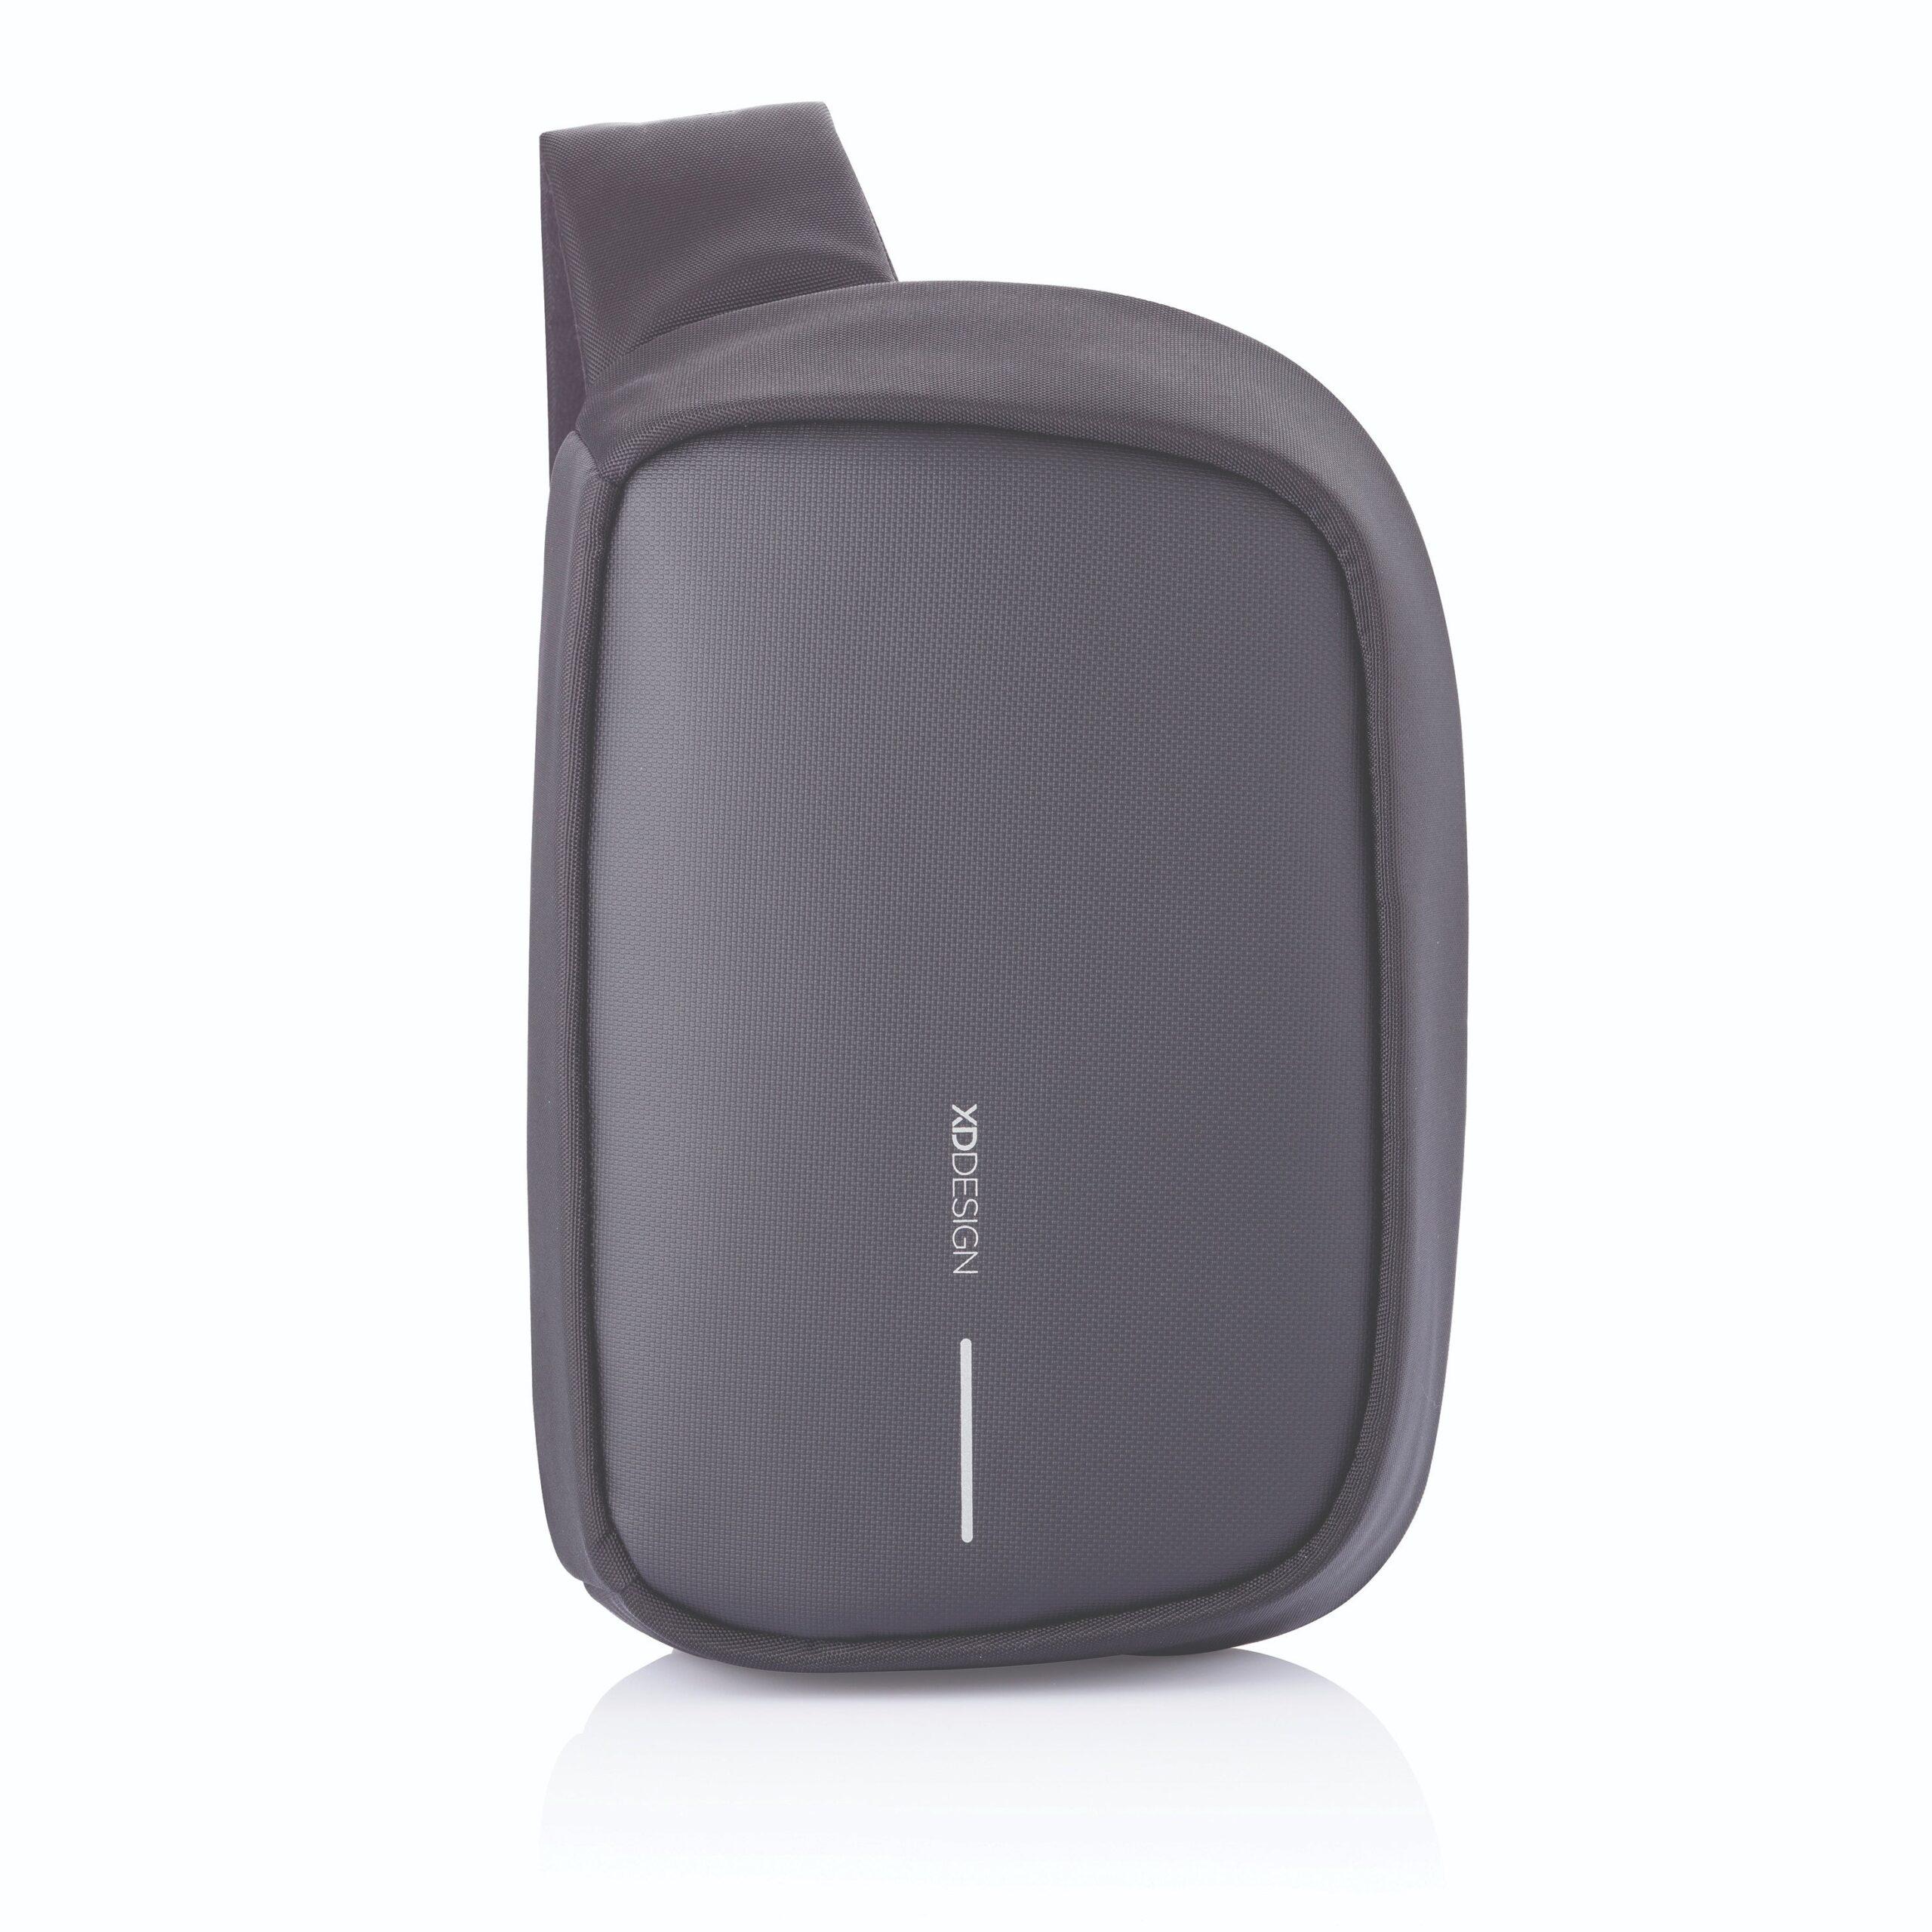 حقيبة لابتوب ظهر اسود Bobby Sling Anti-Theft Backpack Tablet Travel Bag Hidden Zipper Cut Resistant RFID Protected Pocket من XD-Design - cG9zdDozNjM1NzU=